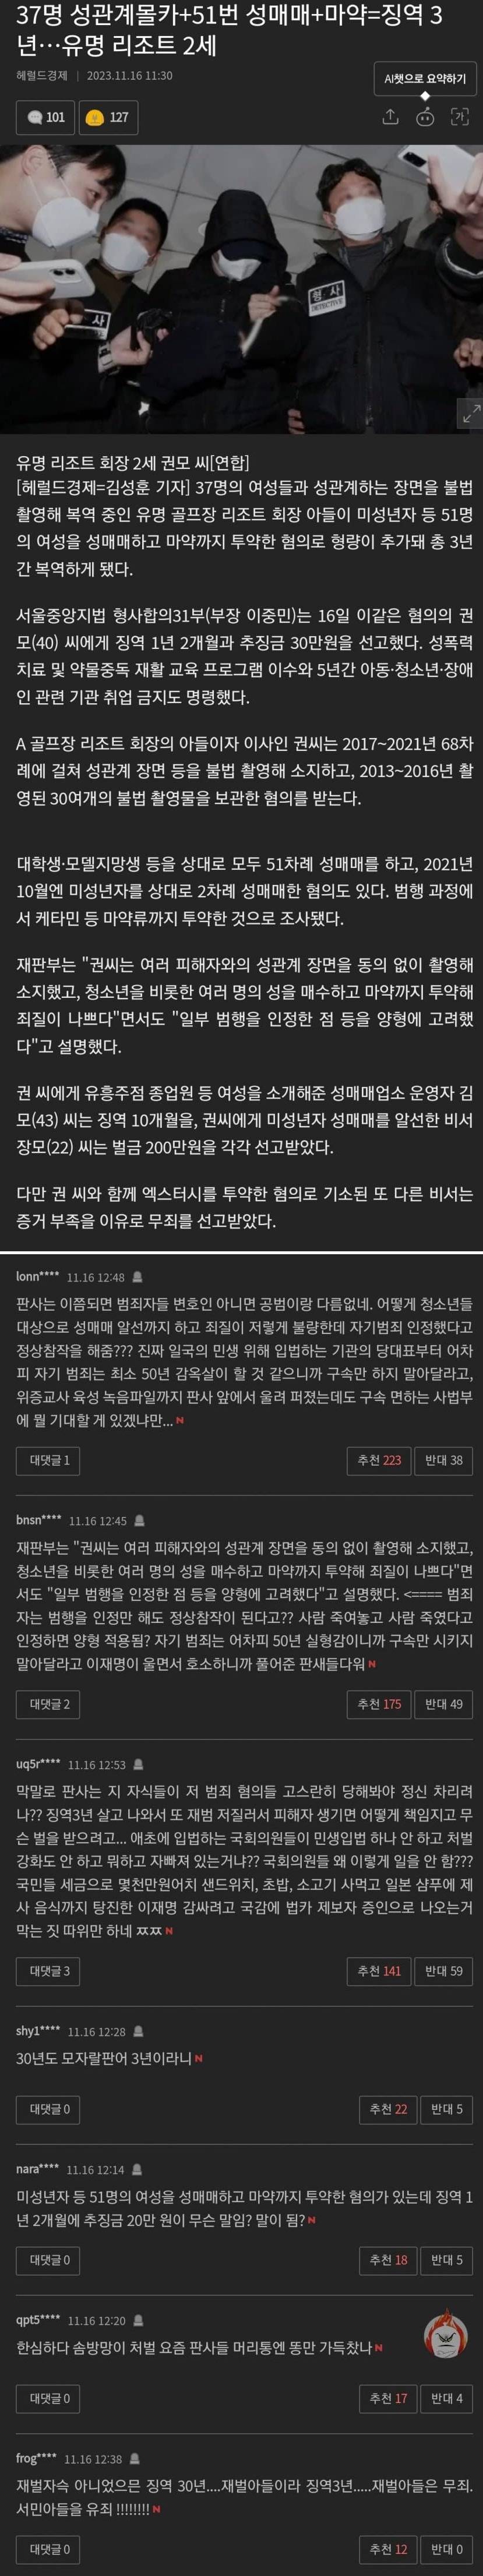 유명 리조트 회장 아들의 성범죄 - 3